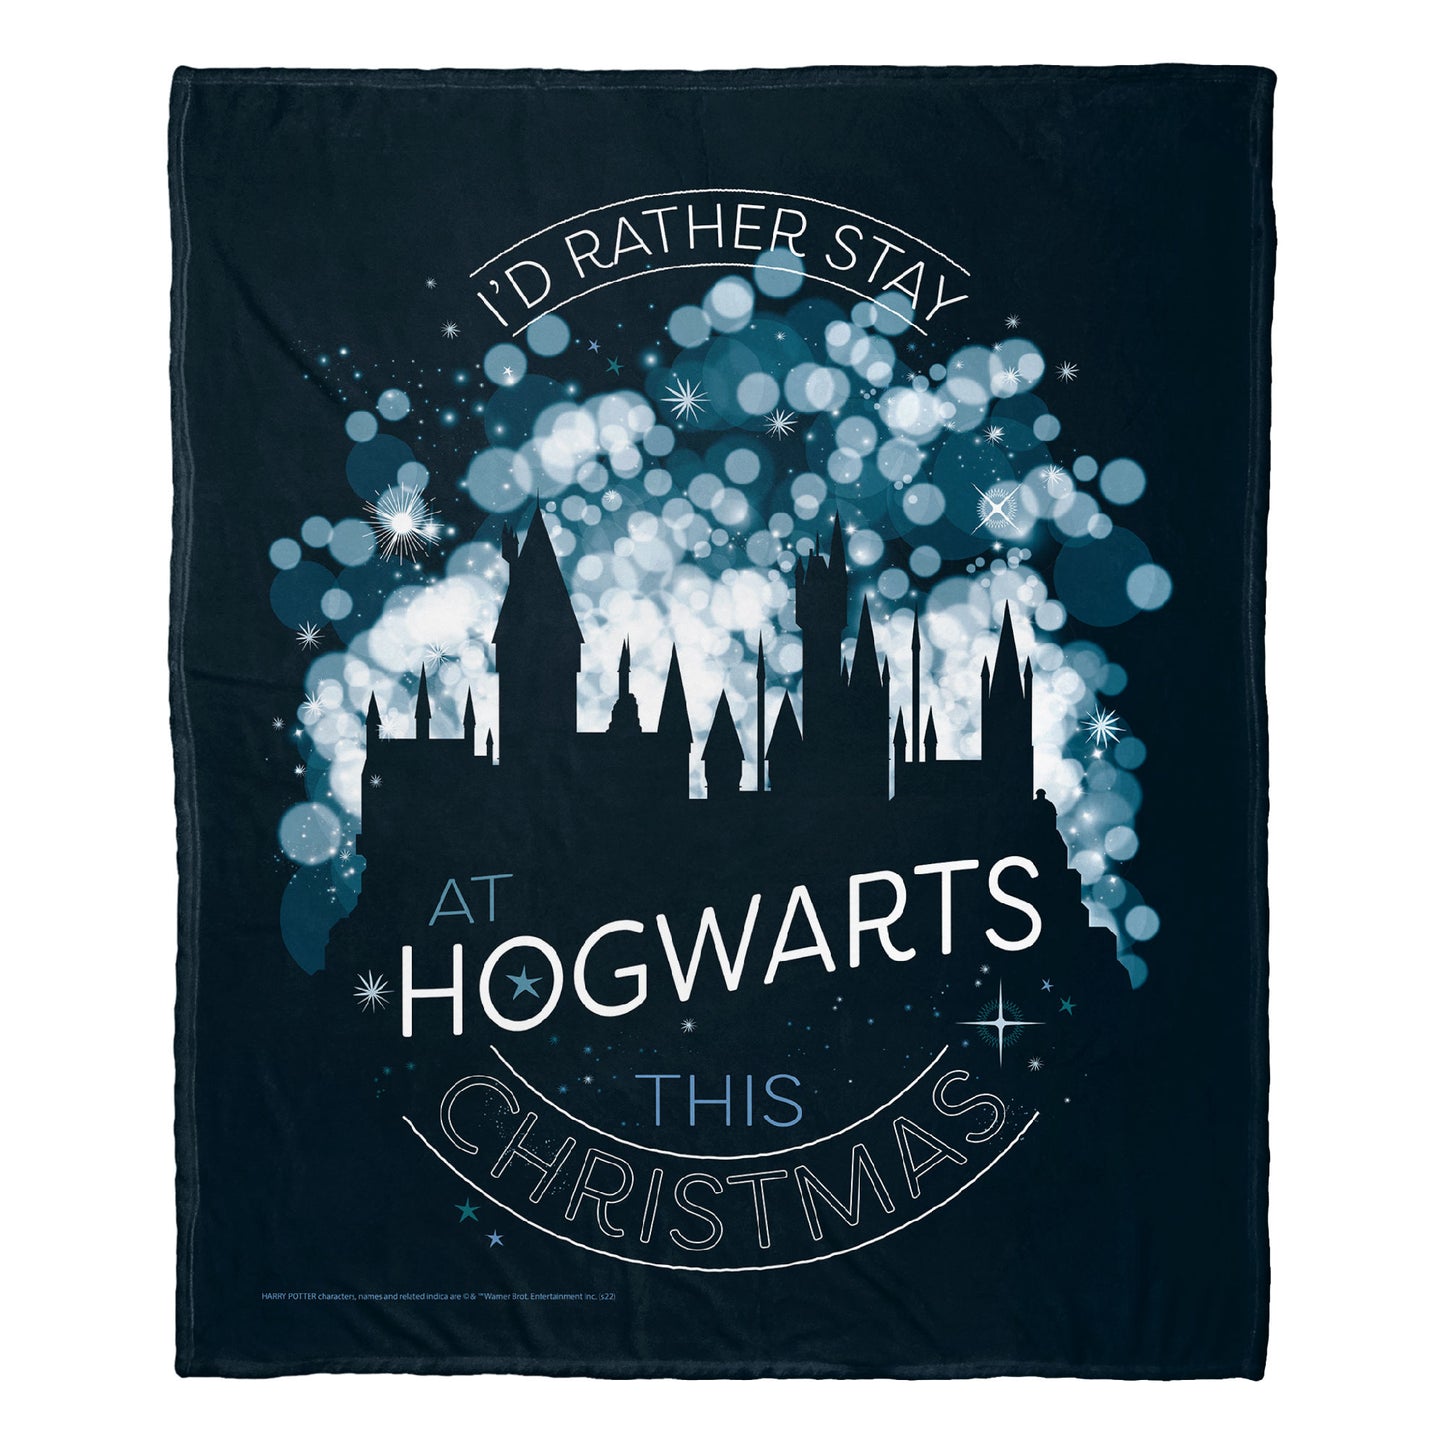 Couverture Harry Potter au toucher soie, 127 x 152,4 cm, Poudlard ce Noël